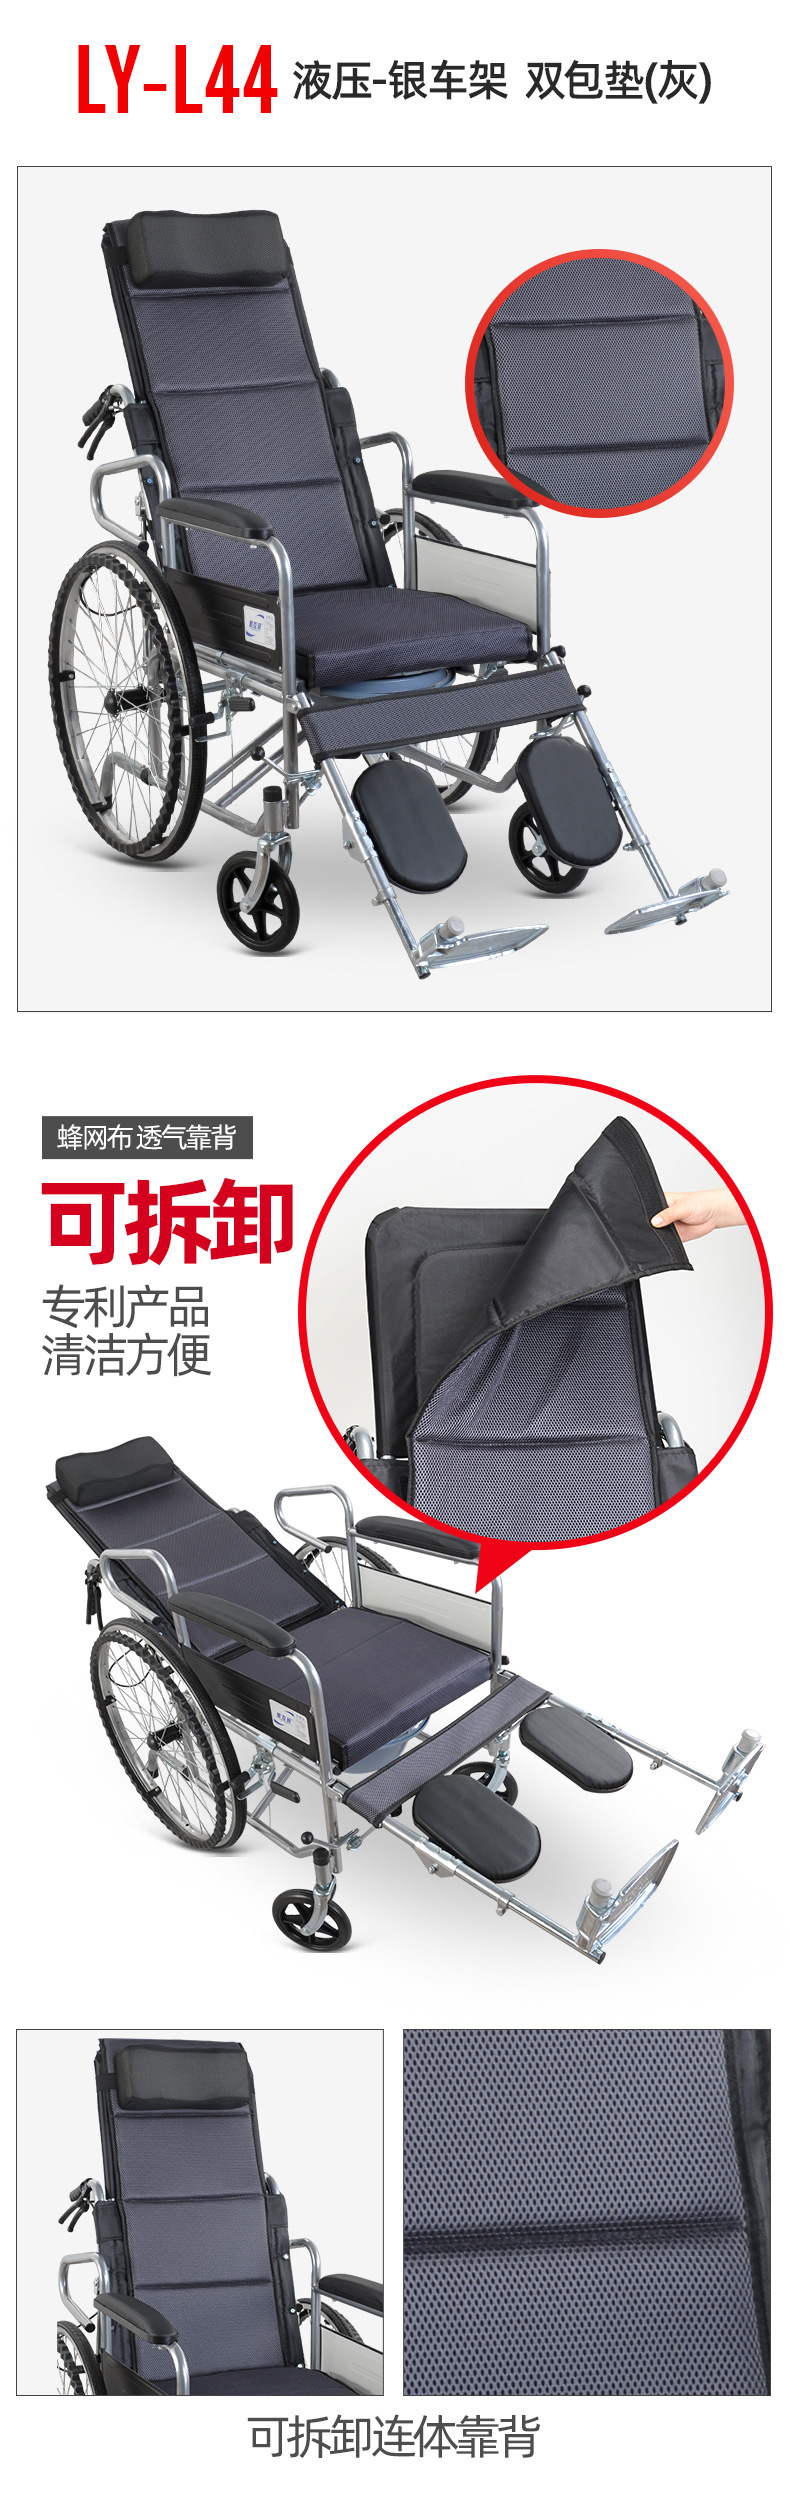 2020.4.16-1轮椅 (1).jpg